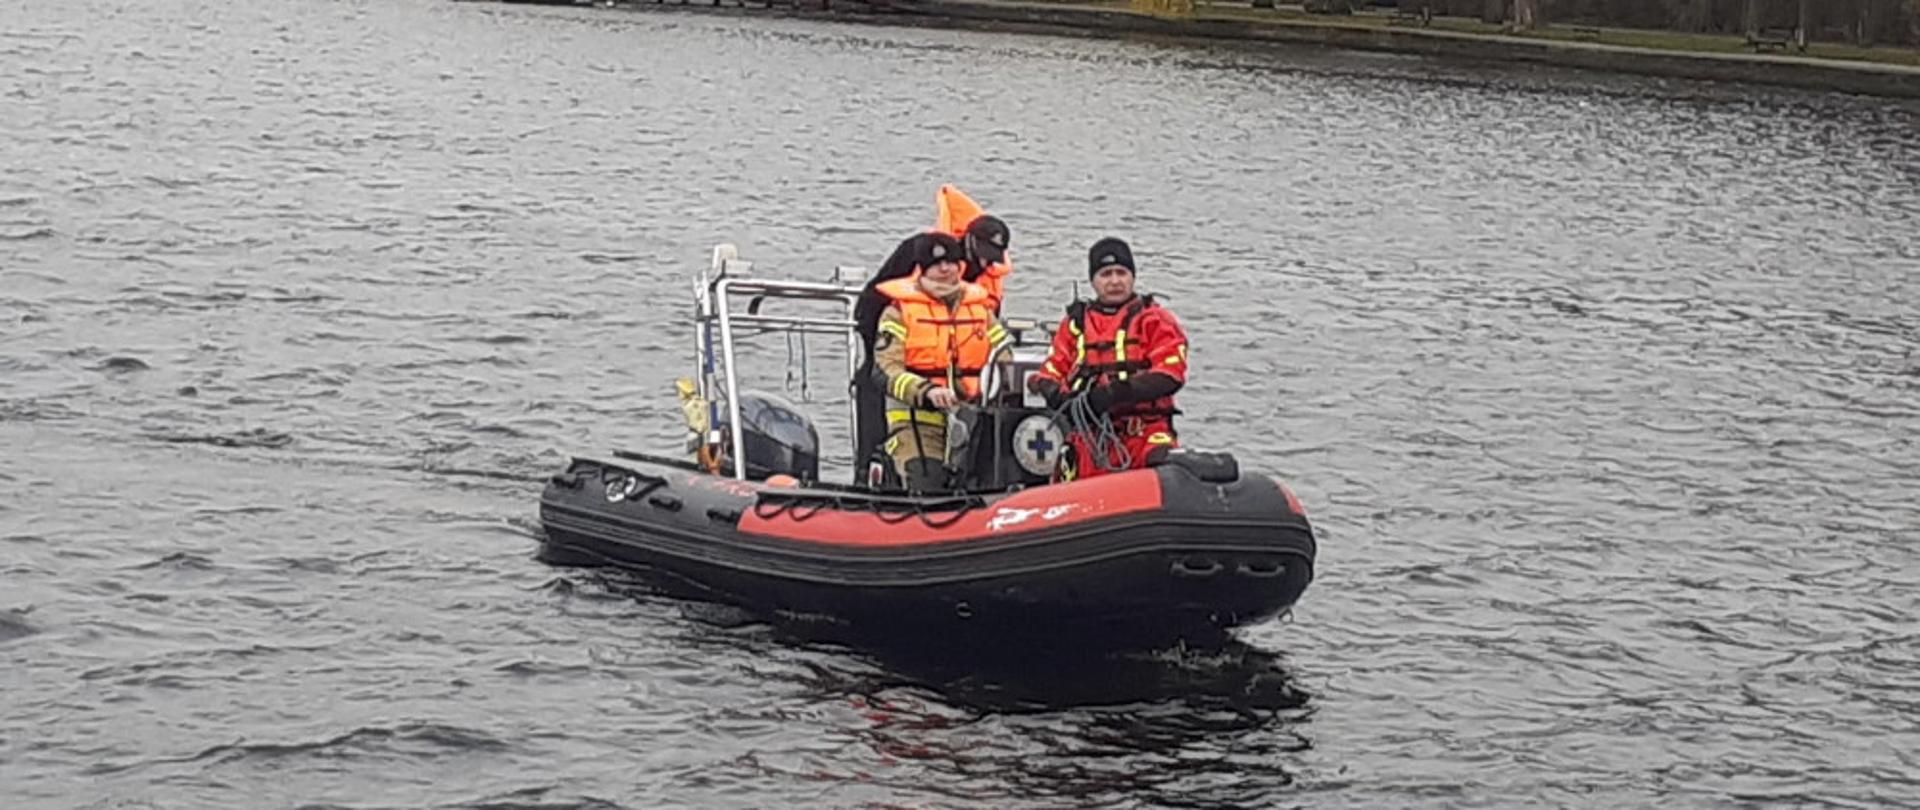 dwóch strażaków ubranych w ubranie specjalne i kamizelkę asekuracyjną wspólnie z przedstawicielem WOPR płyną pontonem ratowniczym WOPRU.